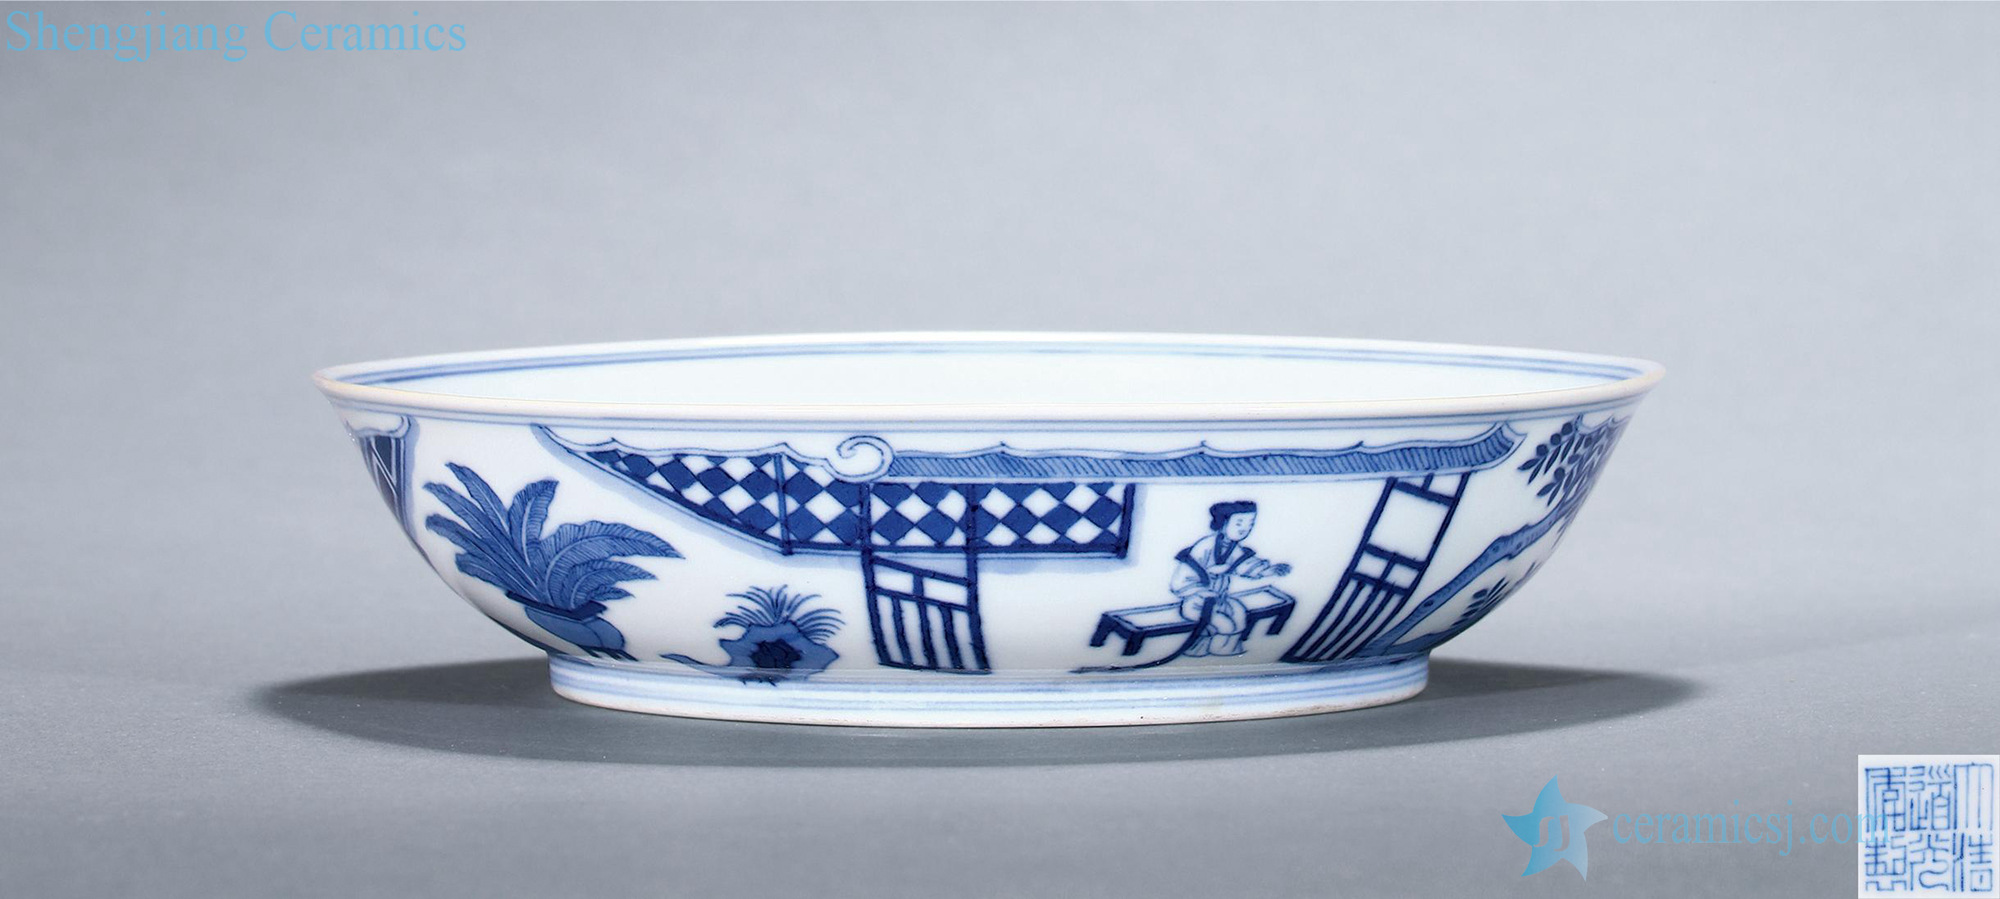 Qing daoguang Blue and white shochiku mei courtyard traditional Chinese dish